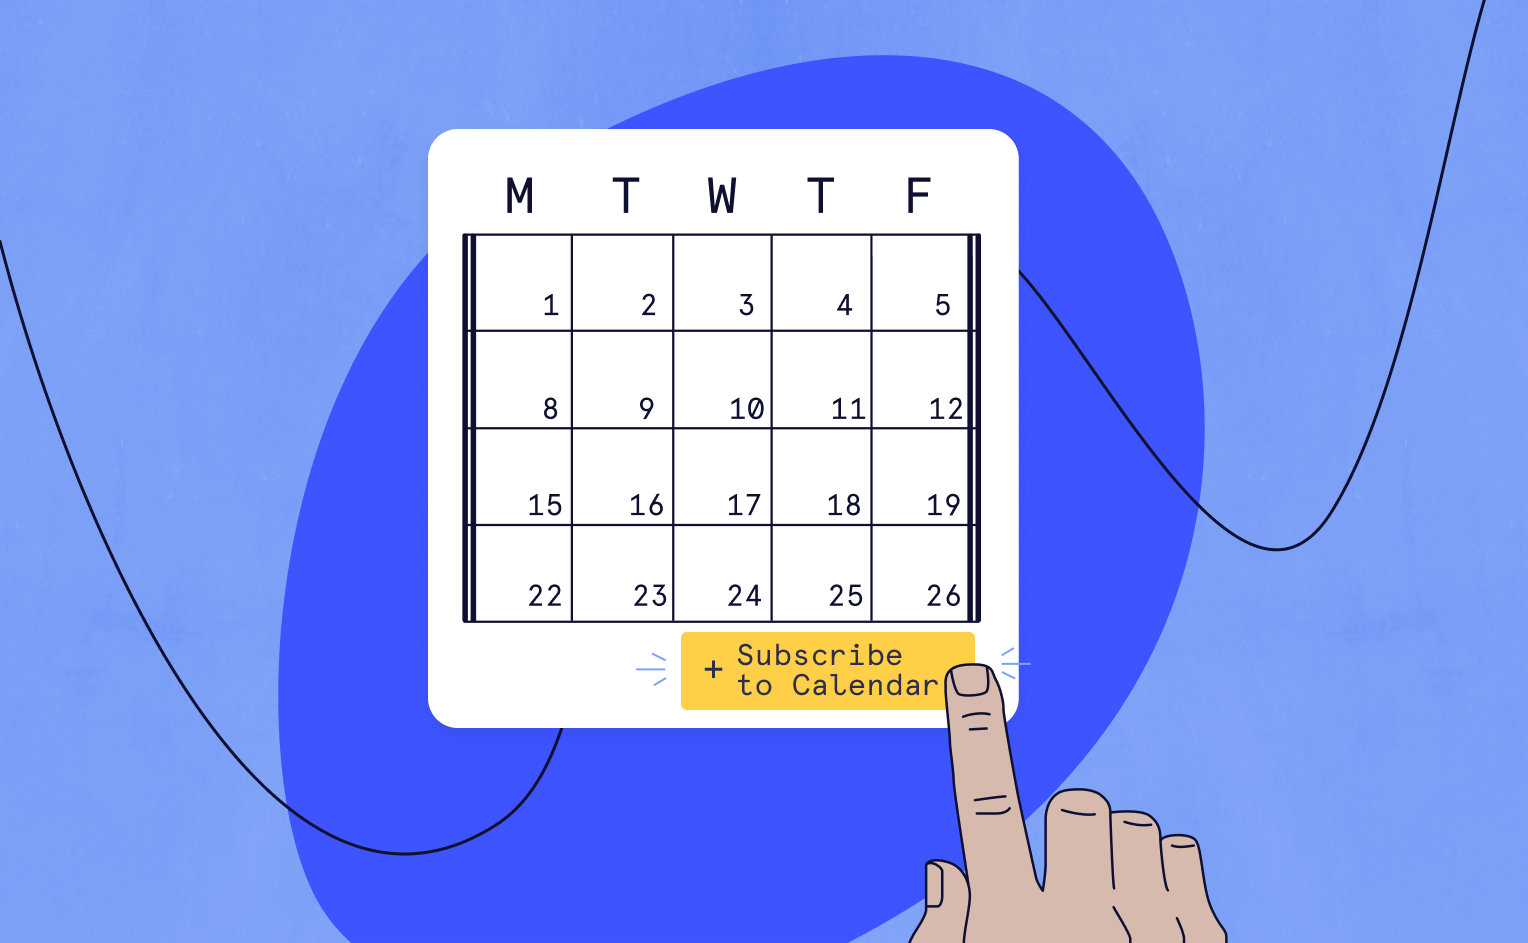 Subscribe to a WordPress Calendar